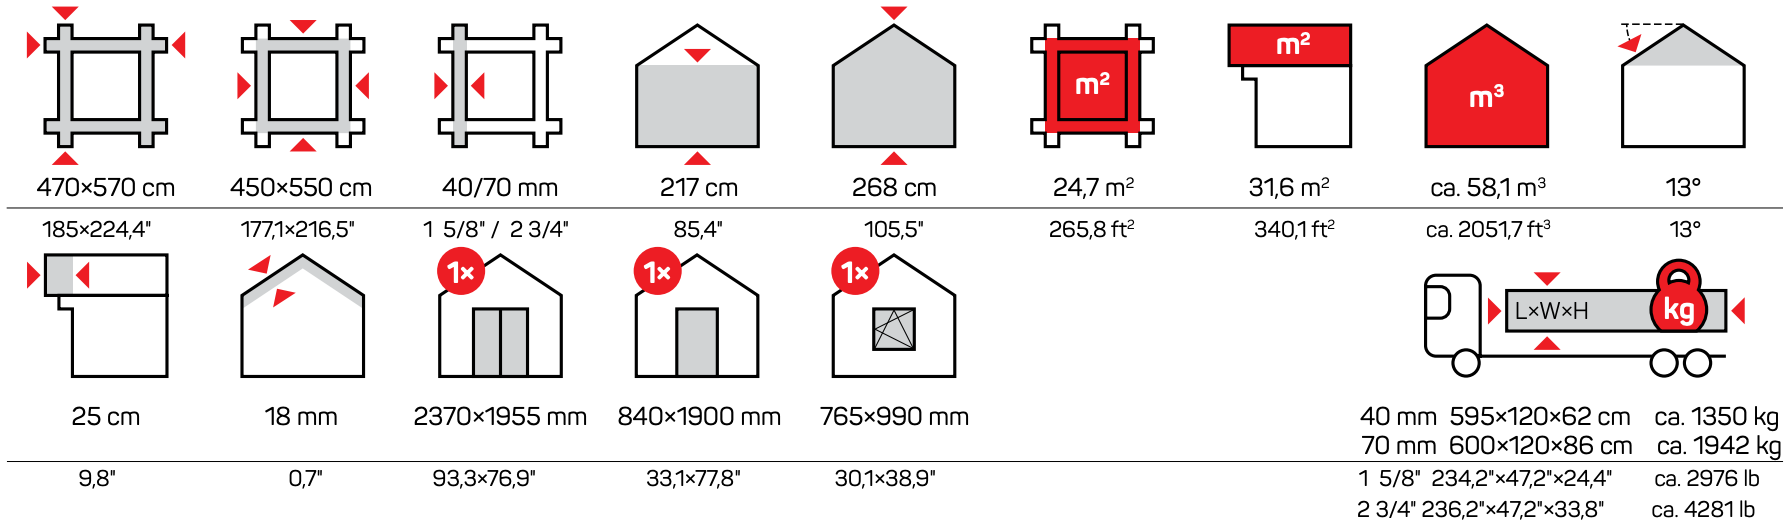 Iconos de medidas de Ibi Garage B Garajes